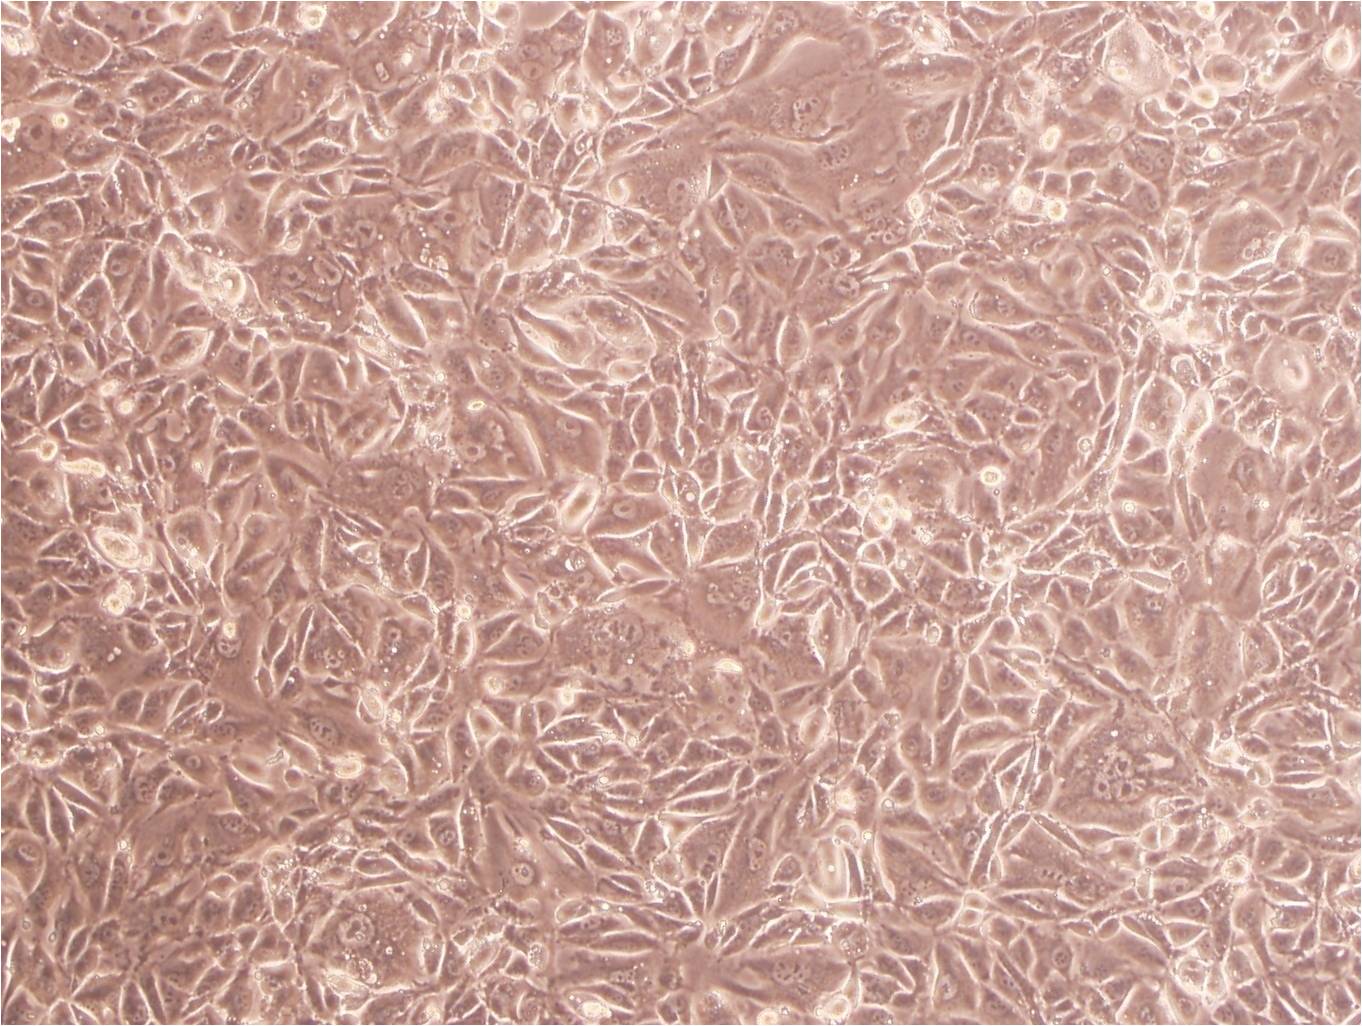 PC-3 Cell:人前列腺癌细胞系,PC-3 Cell